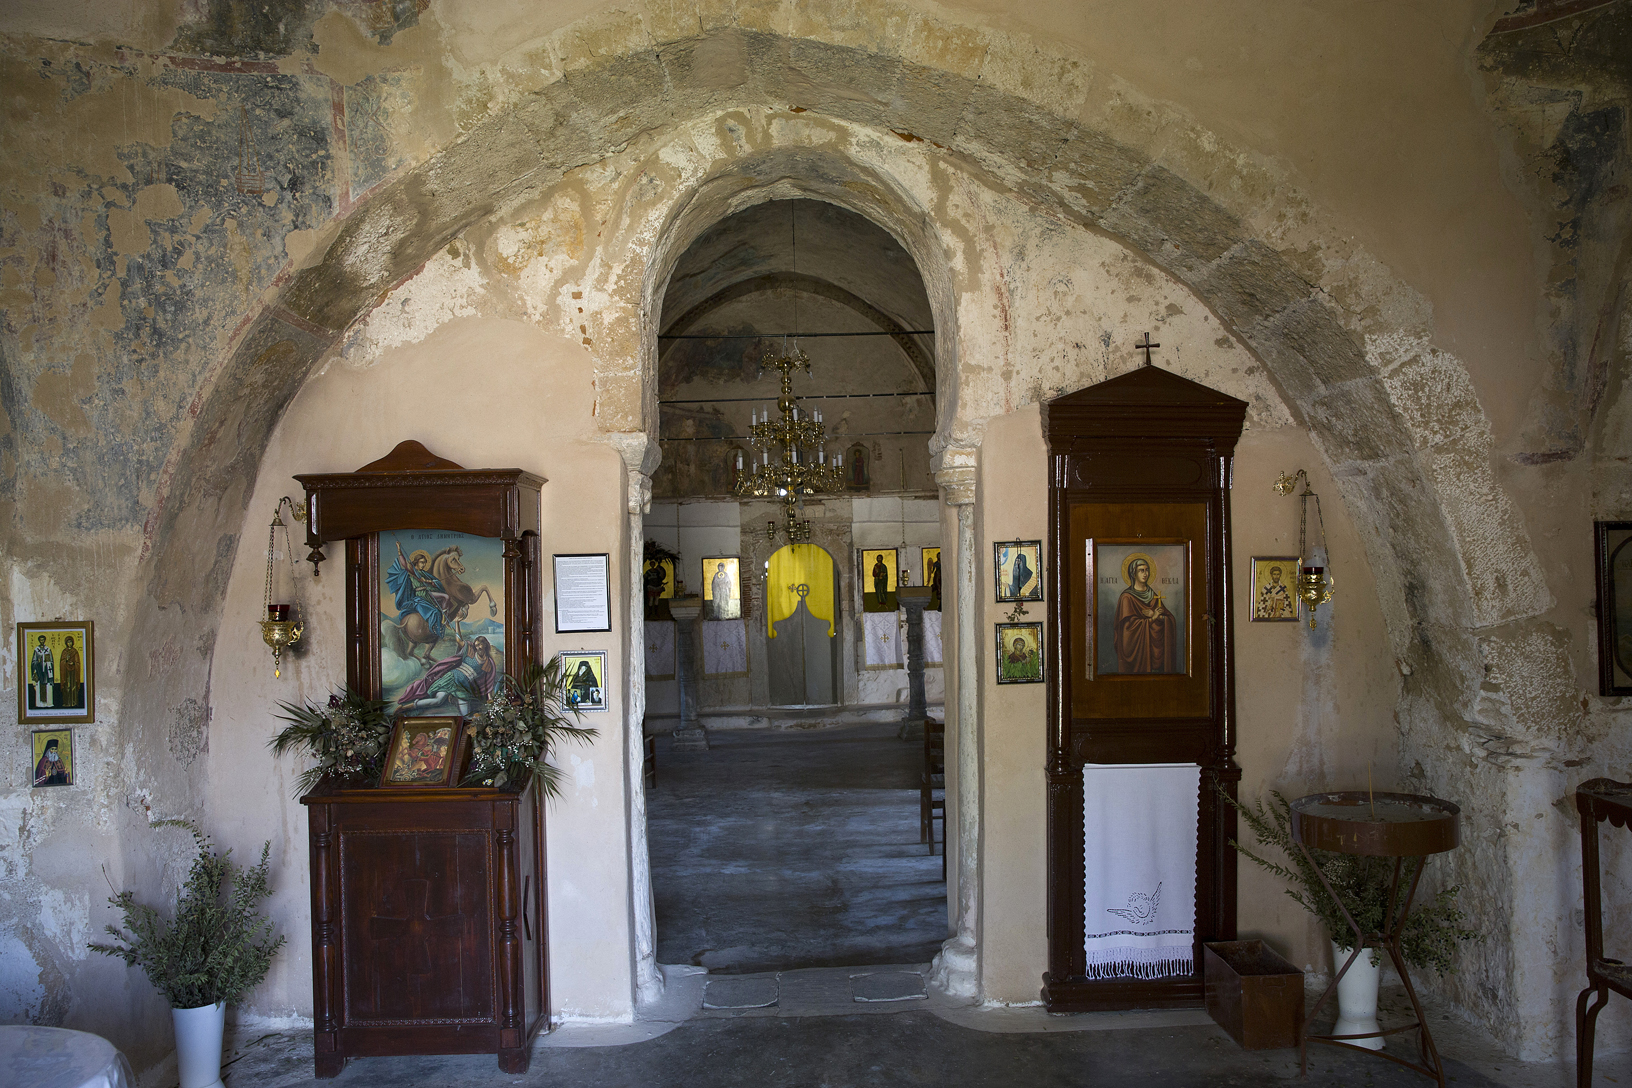 Βυζαντινός Ναός Αγίου Δημητρίου, Χάνια Αυλωναρίου. Φωτογραφία: ©Βασίλης Συκάς, για τον Δήμο Κύμης-Αλιβερίου